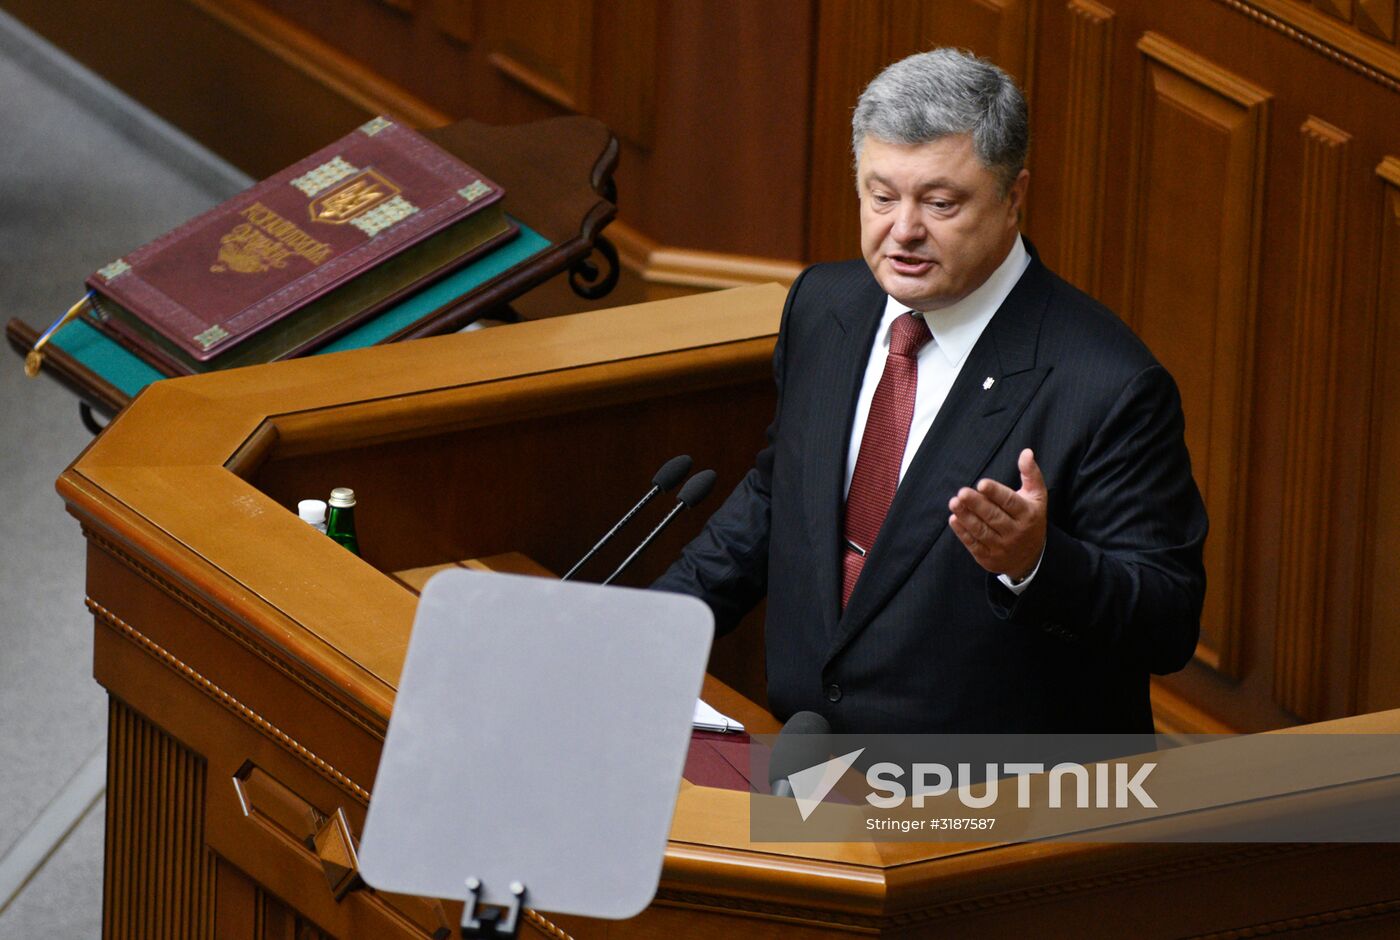 Verkhovna Rada holds session in Kiev